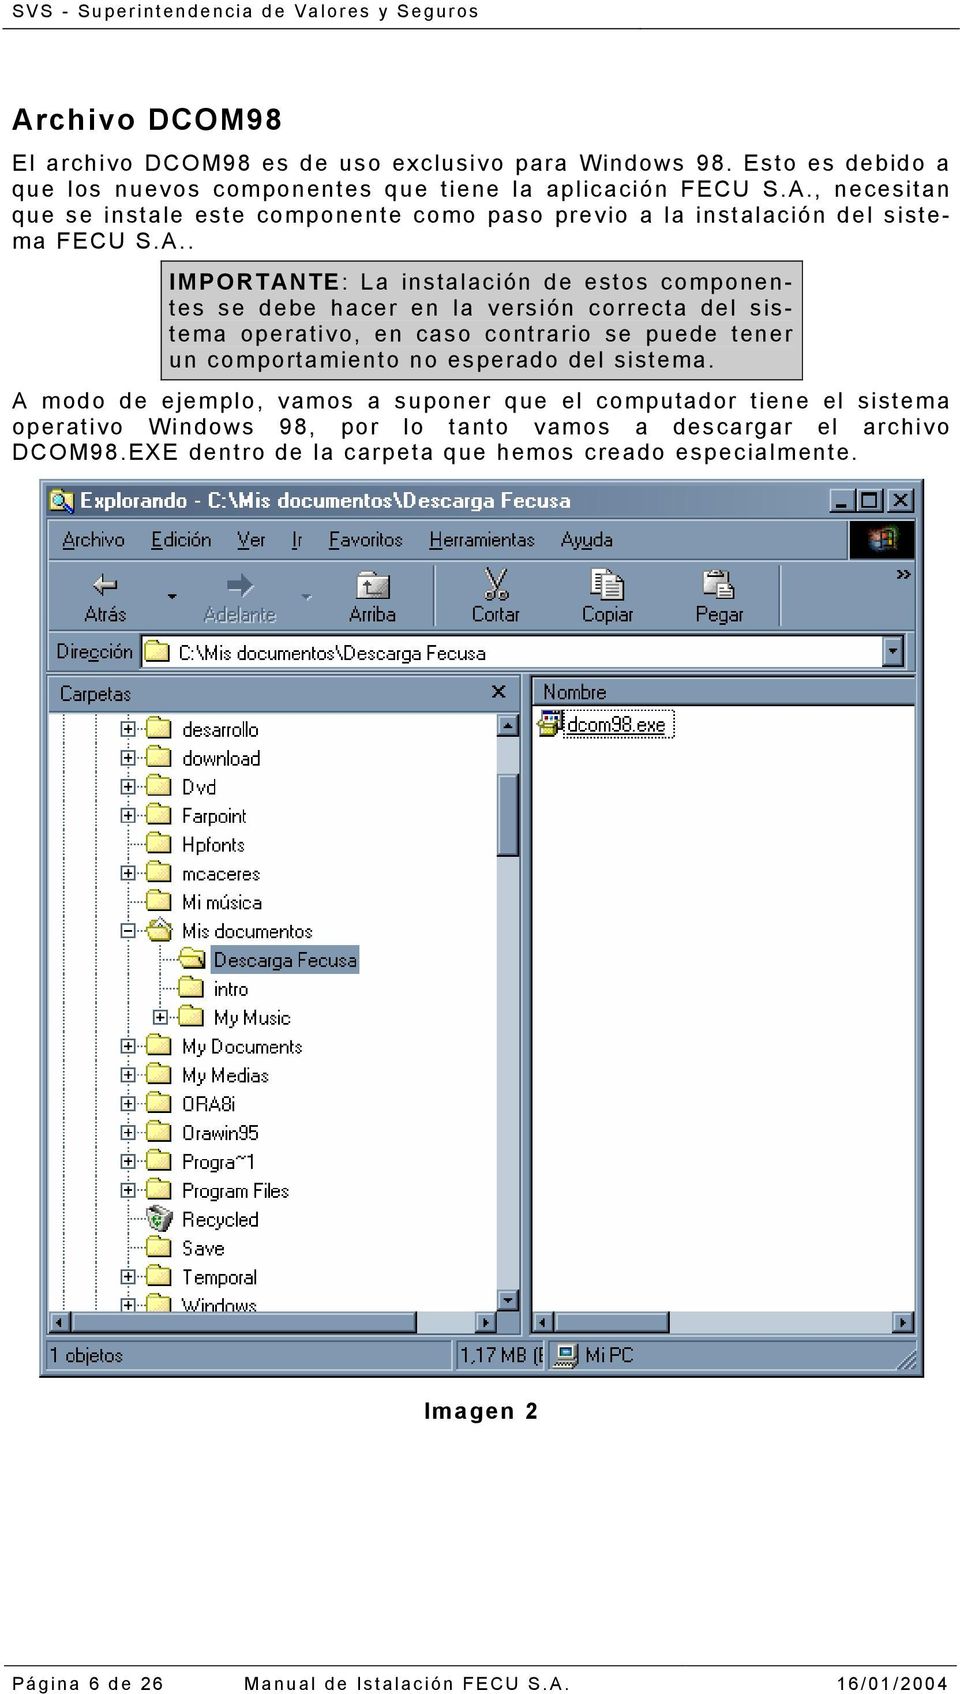 esperado del sistema. A modo de ejemplo, vamos a suponer que el computador tiene el sistema operativo Windows 98, por lo tanto vamos a descargar el archivo DCOM98.